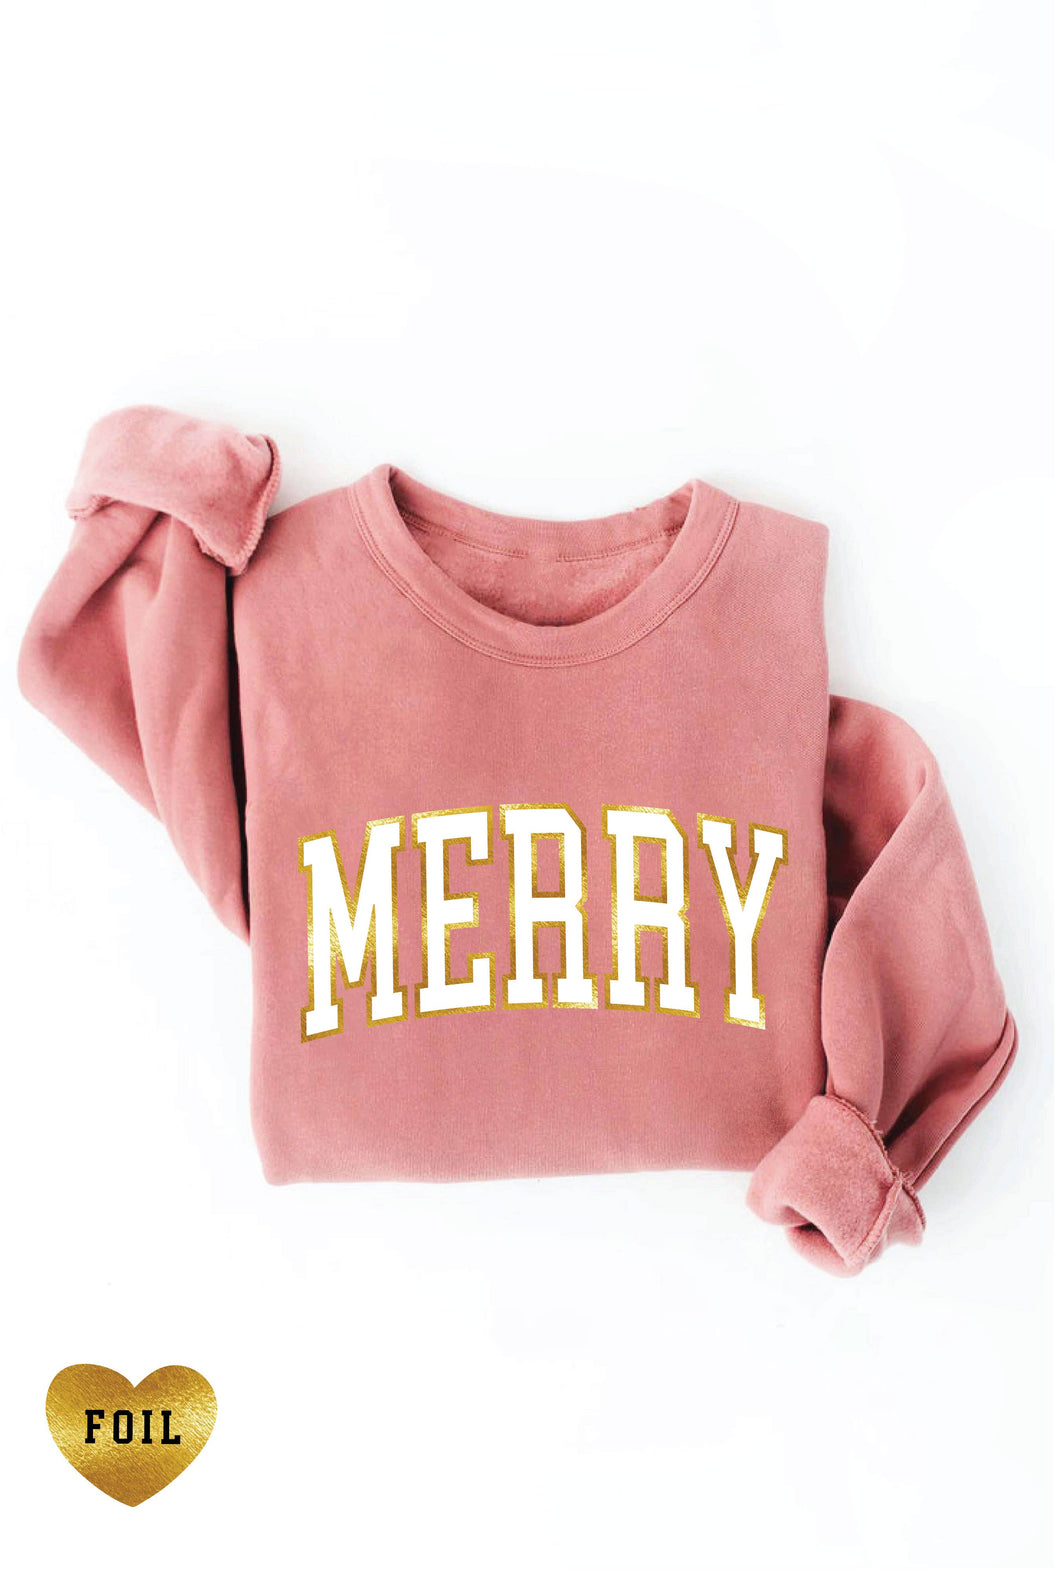 MERRY FOIL Graphic Sweatshirt: XL / MAUVE